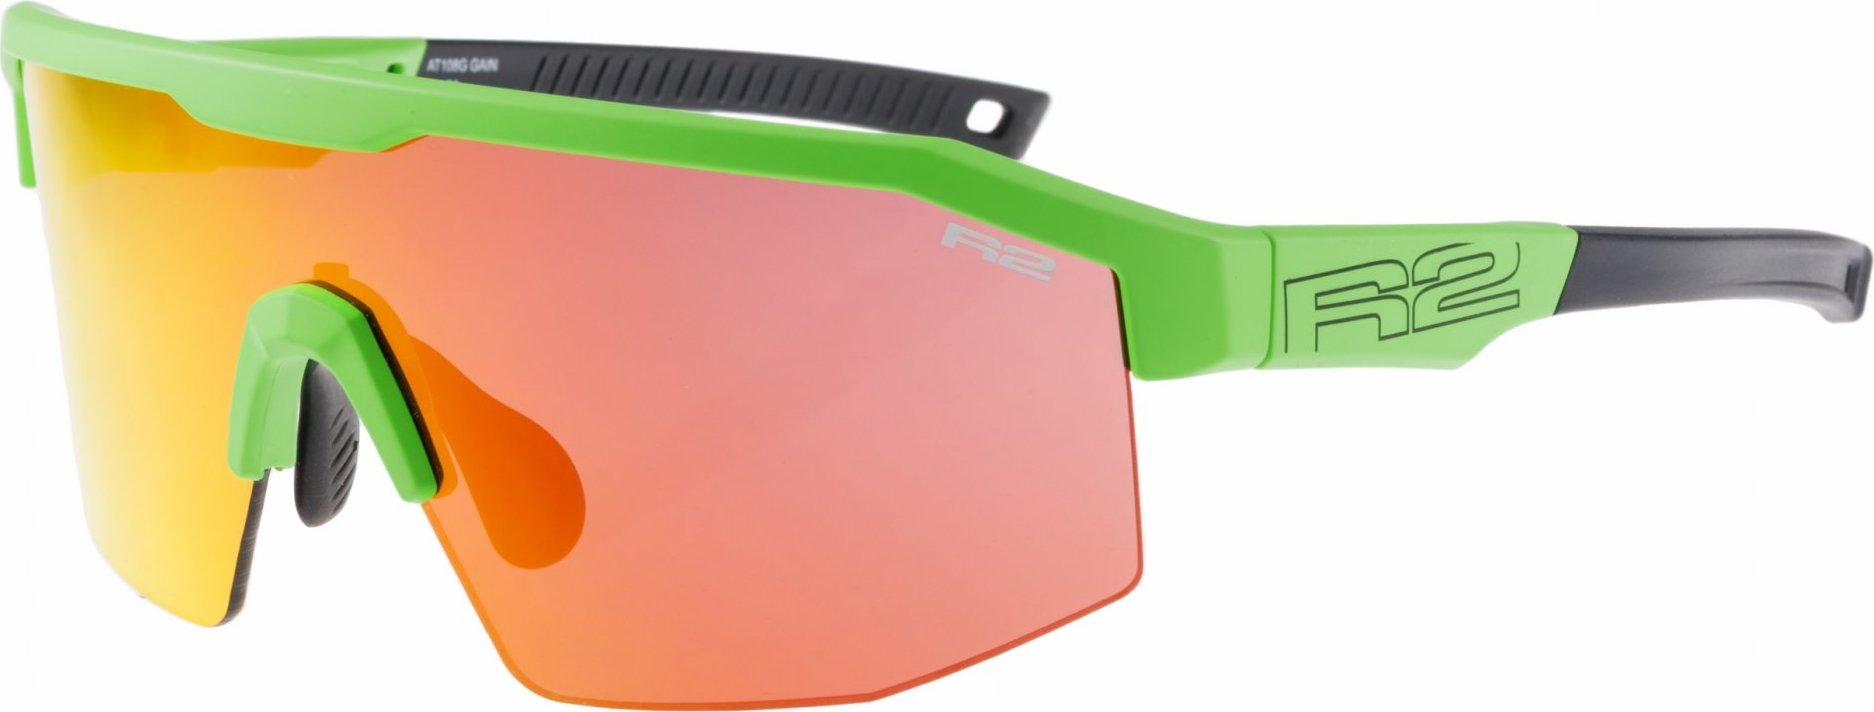 HD sportovní sluneční brýle R2 Gain zelené